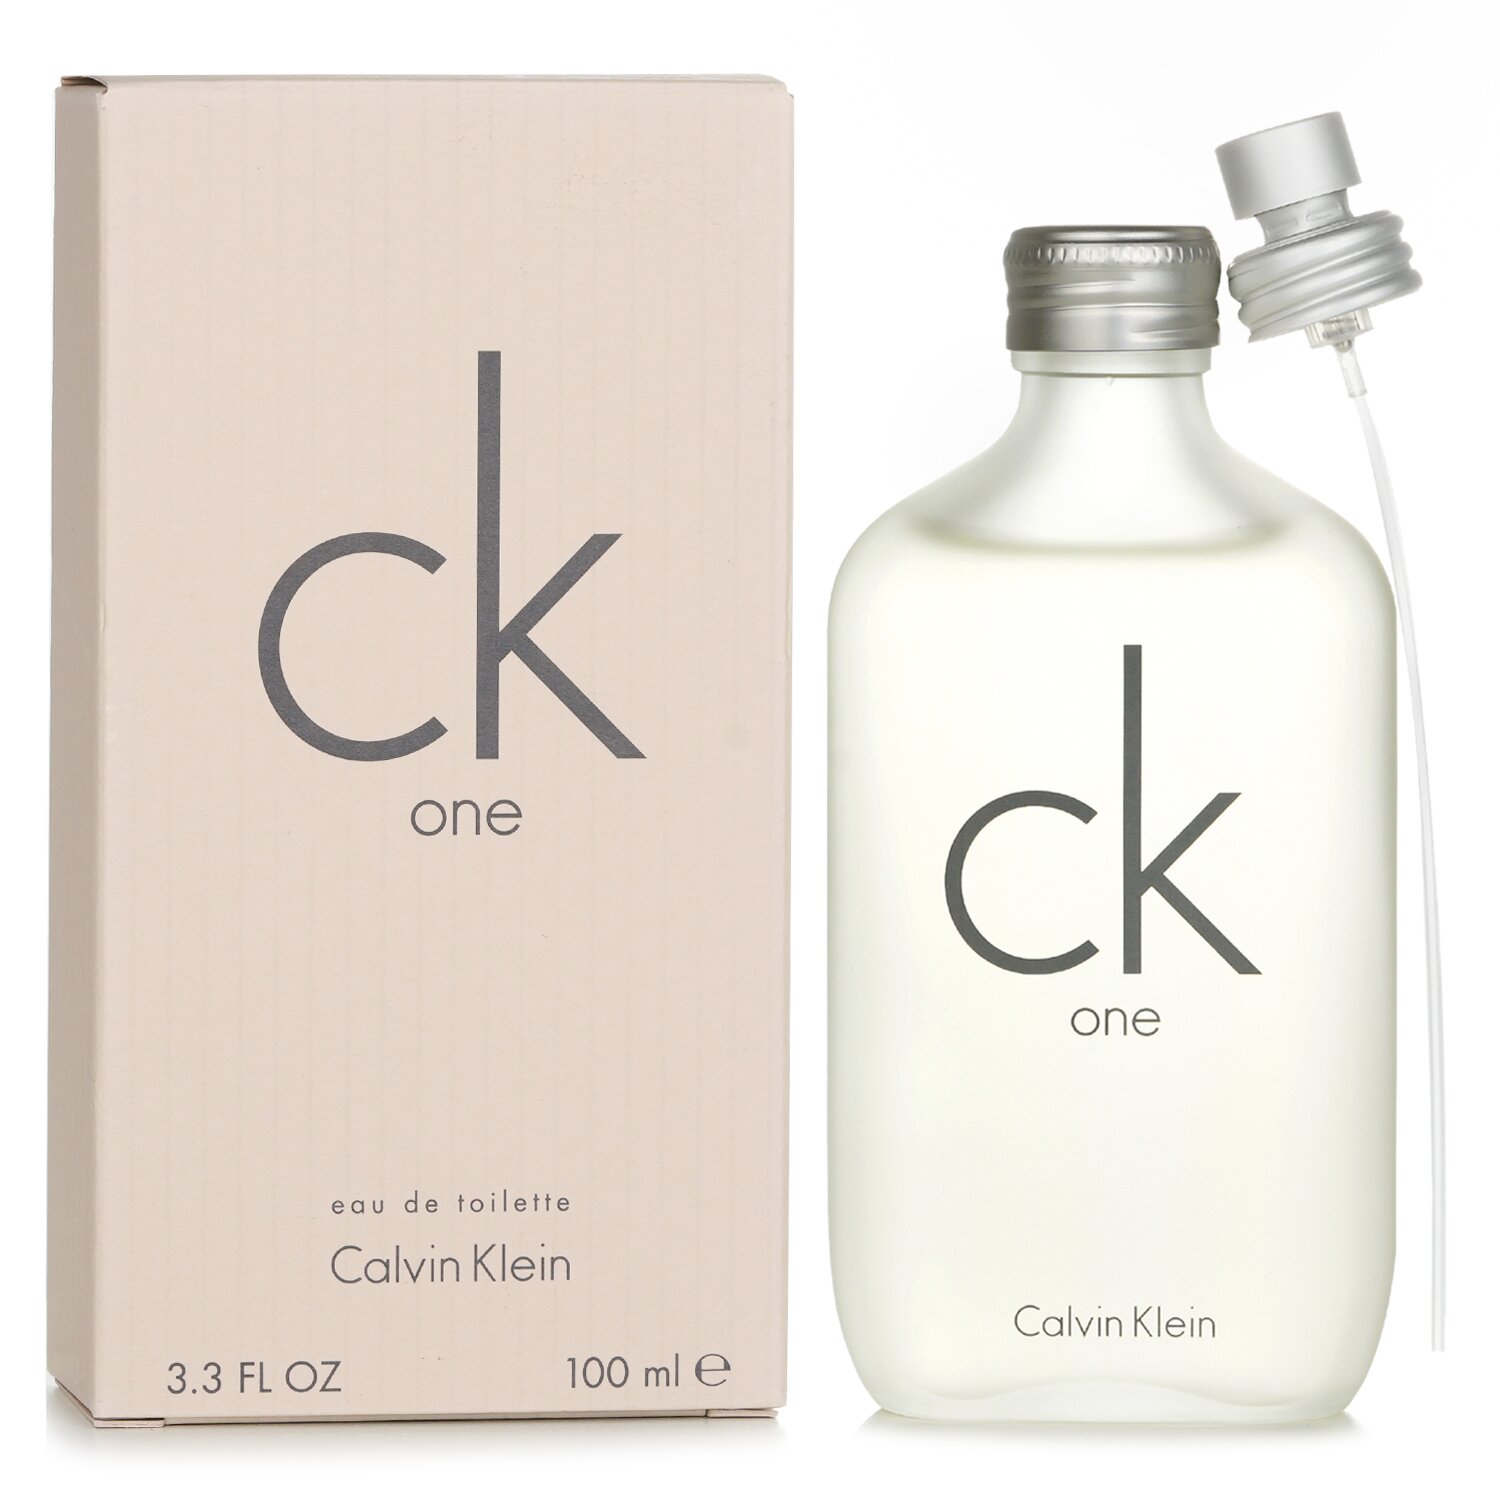 Calvin Klein CK One Apă de Toaletă Spray 100ml/3.4oz